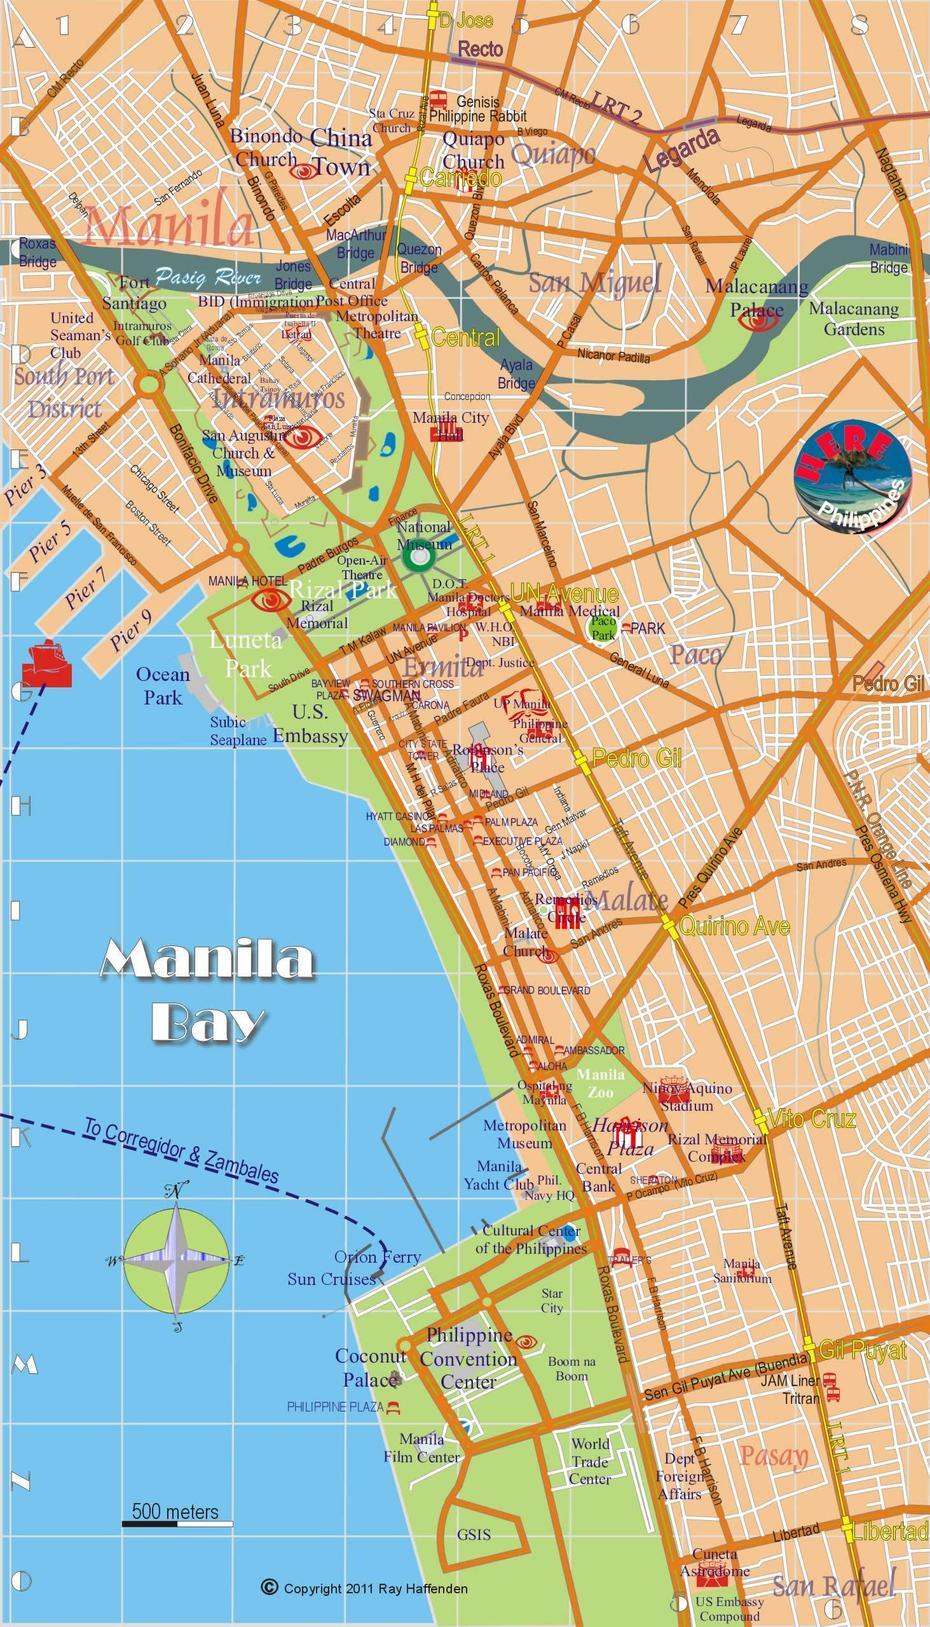 Philippines Road, Manila Airport, Satellite Image, Manila, Philippines